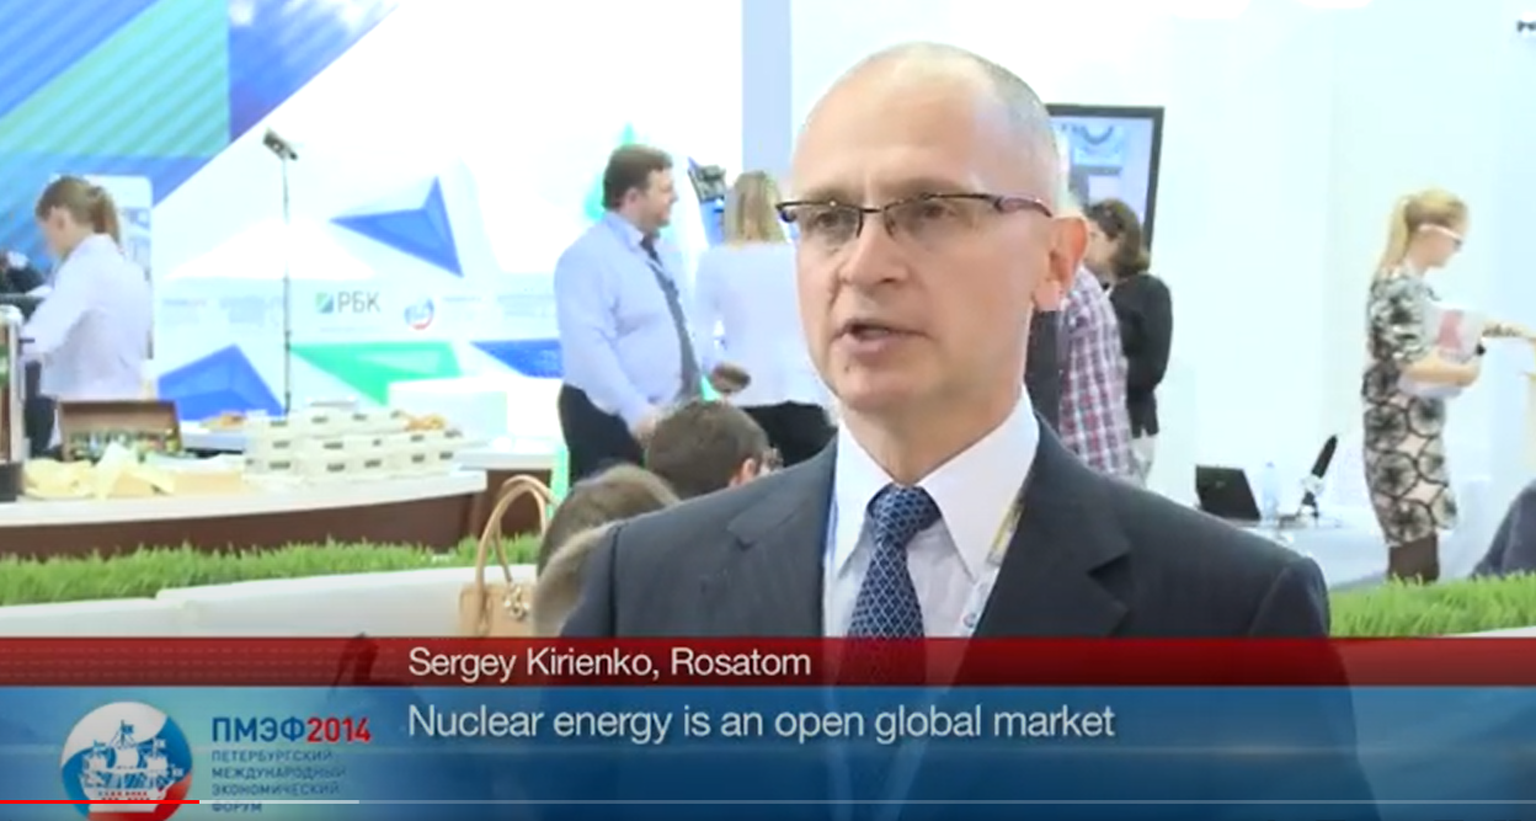 Venemaa aatomienergiaagentuuri Rosatom juht Sergei Kirijenko. Ta juhtis Rosatomit 2005 - 2016